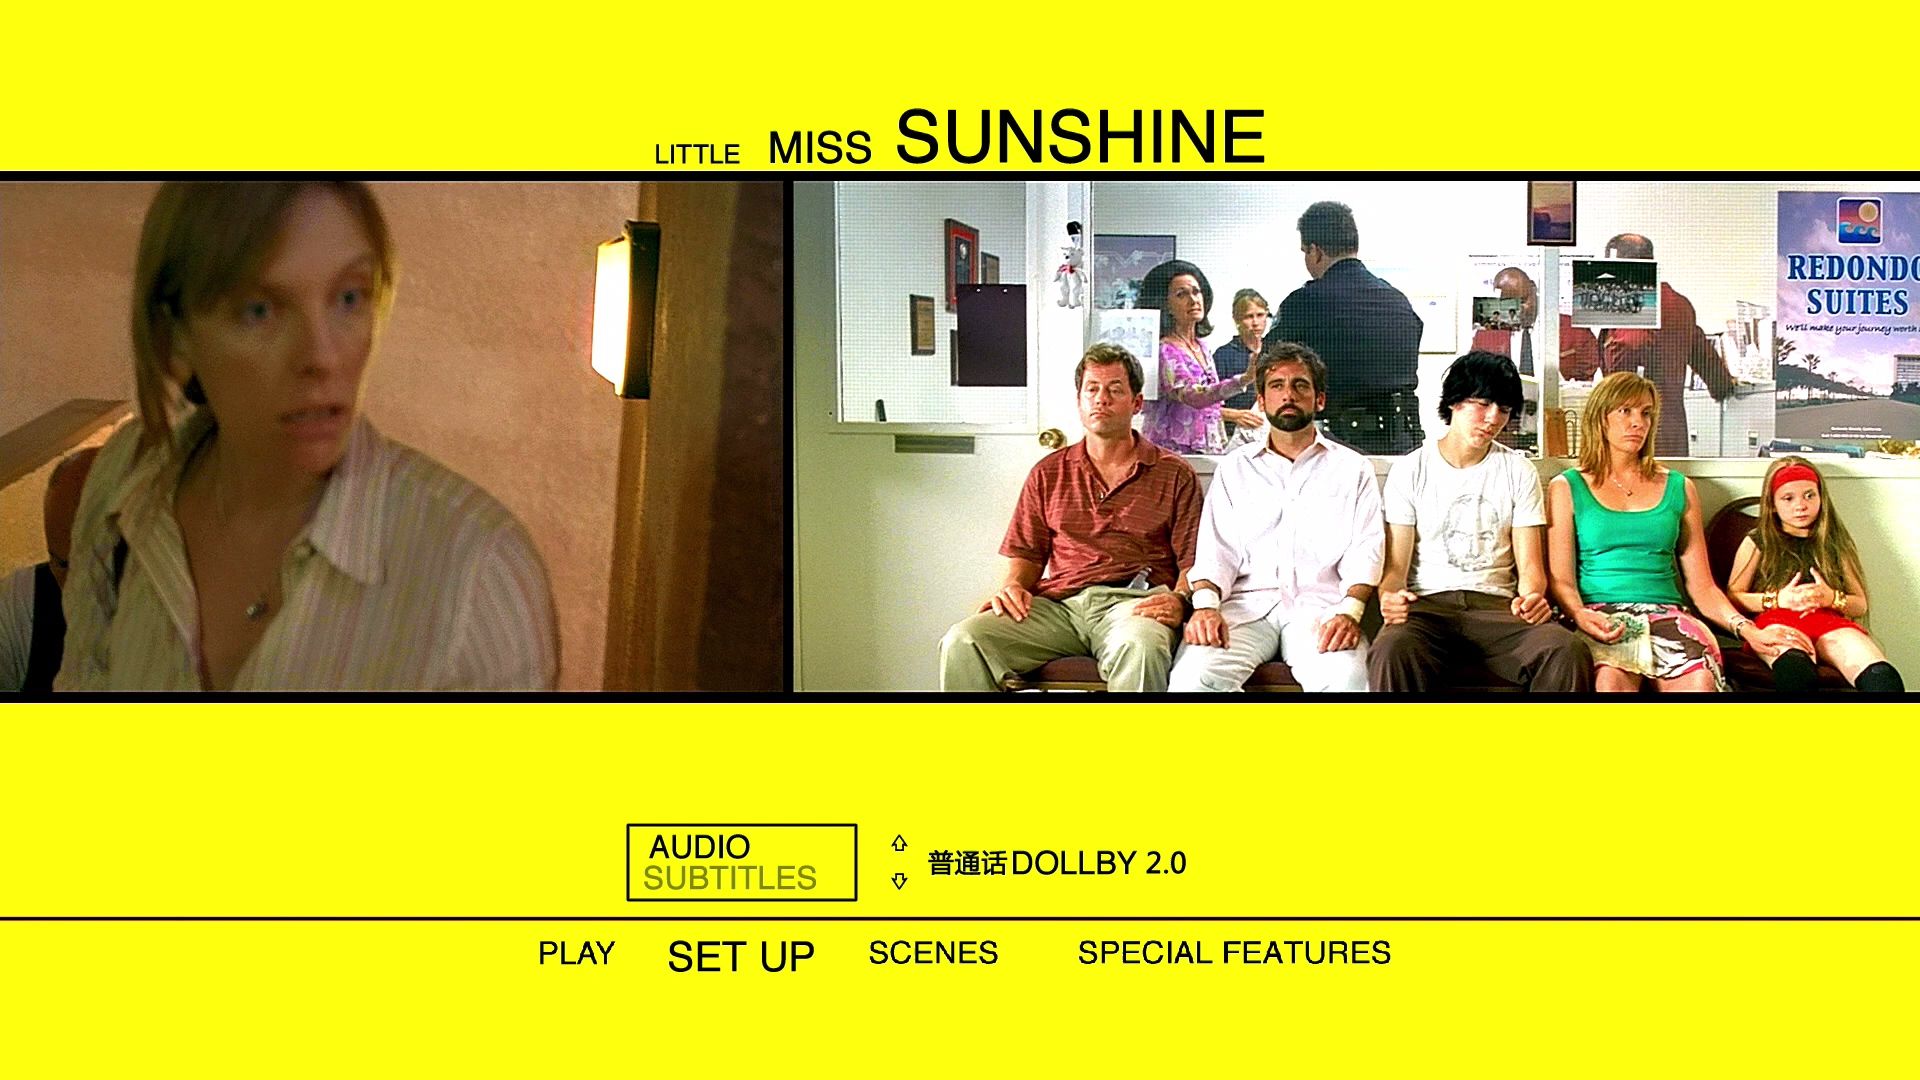 阳光小美女 [DIY上译/央视长影双国语+简繁R3双语简体.上译国配简体+菜单修改] Little Miss Sunshine 2006 1080p CEE Blu-ray AVC DTS-HD MA 5.1 DIY-Chinagear@HDSky    [35.27 GB ]-2.jpg